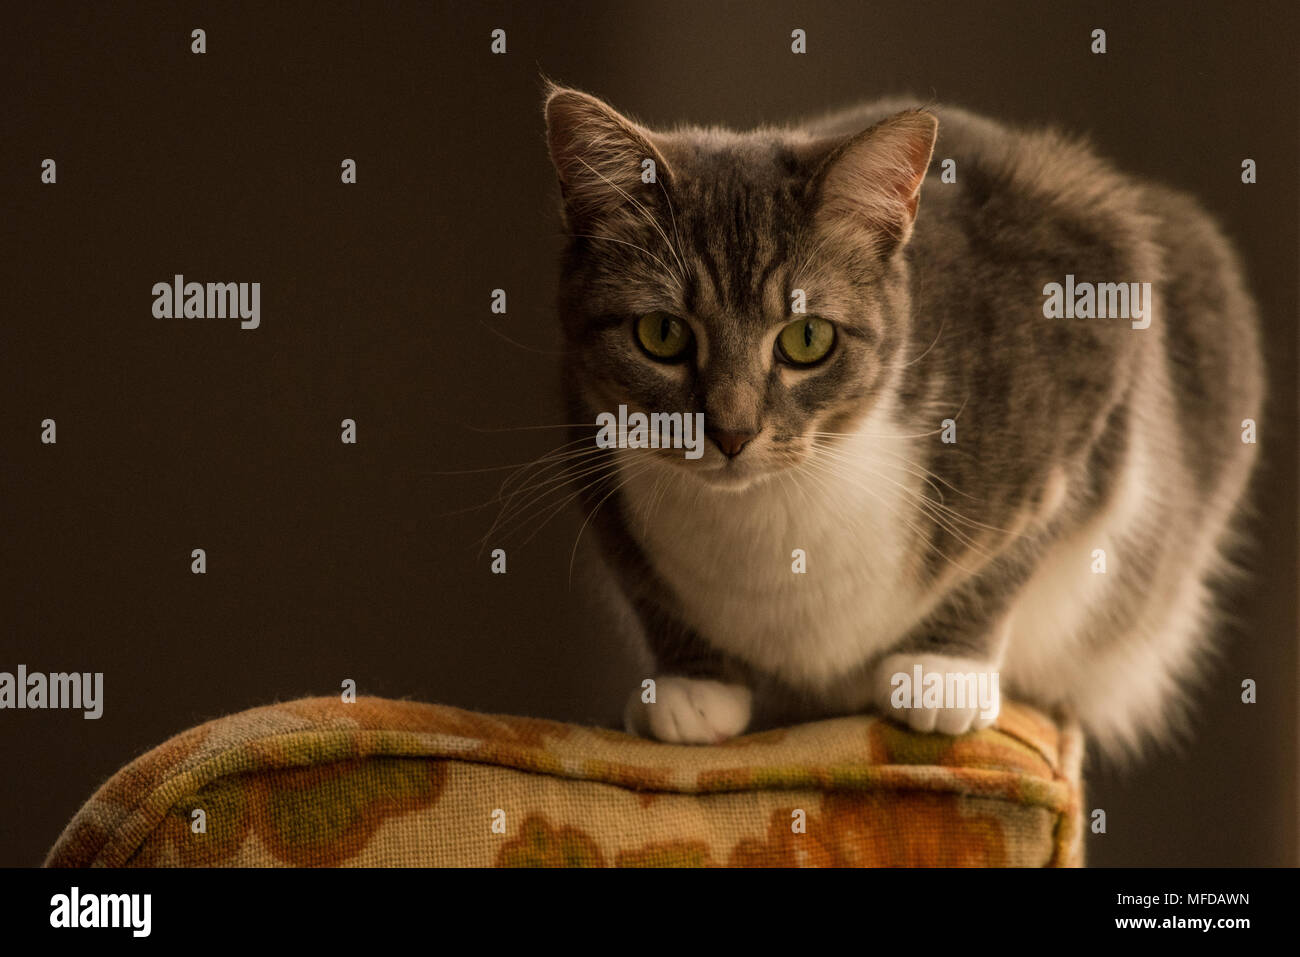 Eine inländische tabby Katze, eine verwöhnte indoor Cat, Lounges und sich um das Haus herum. Stockfoto